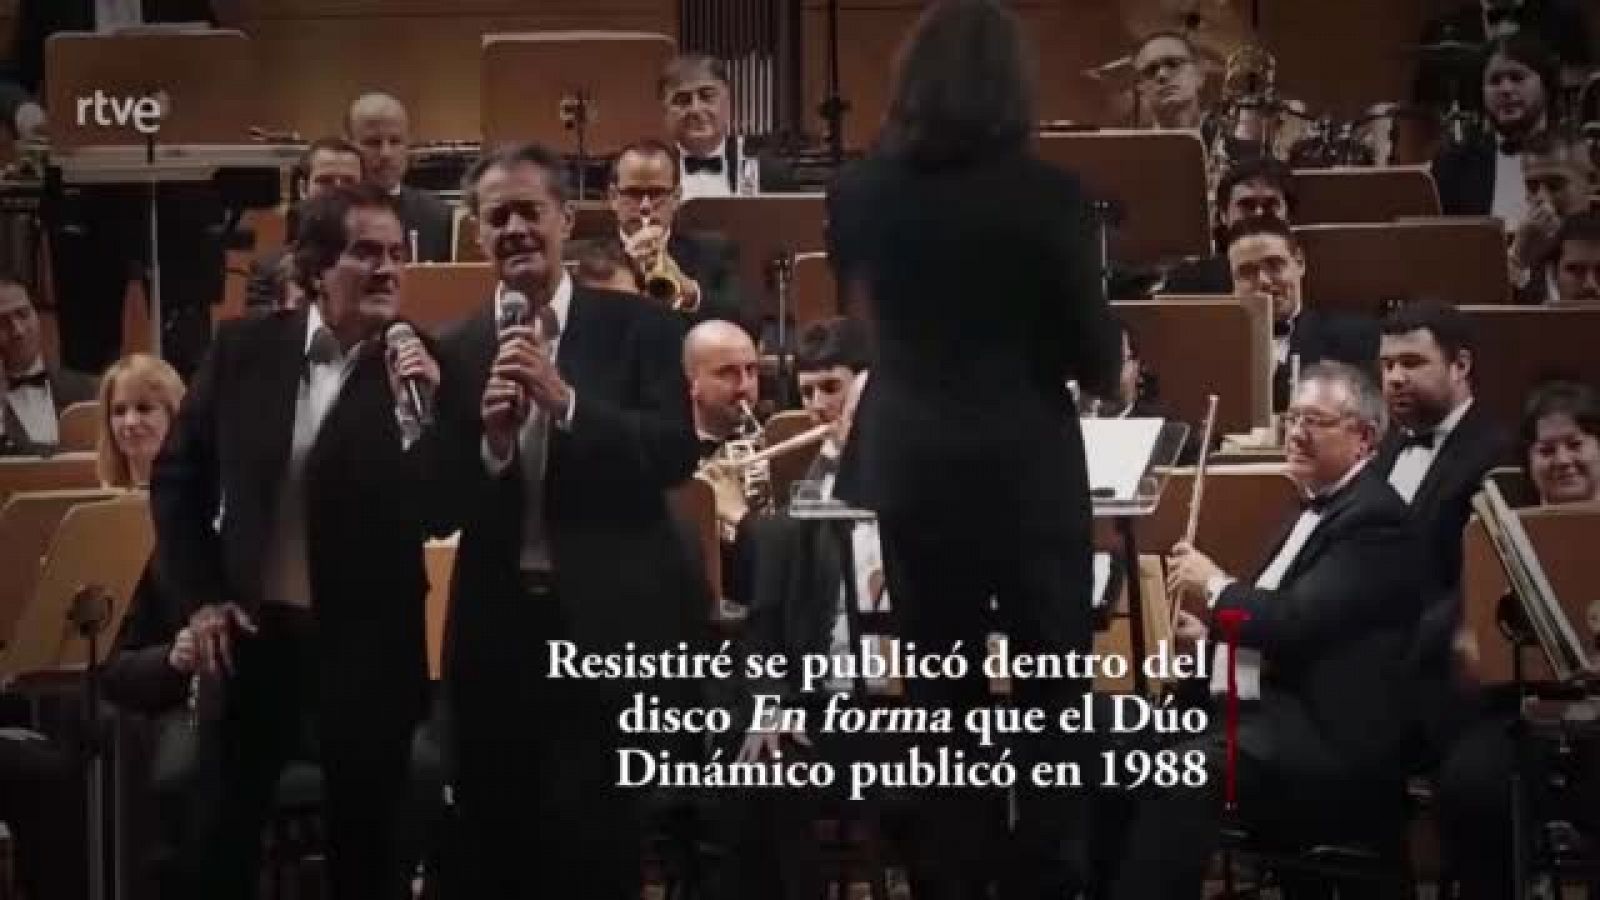 Lazos de sangre - "Resistiré", el himno español contra el coronavirus